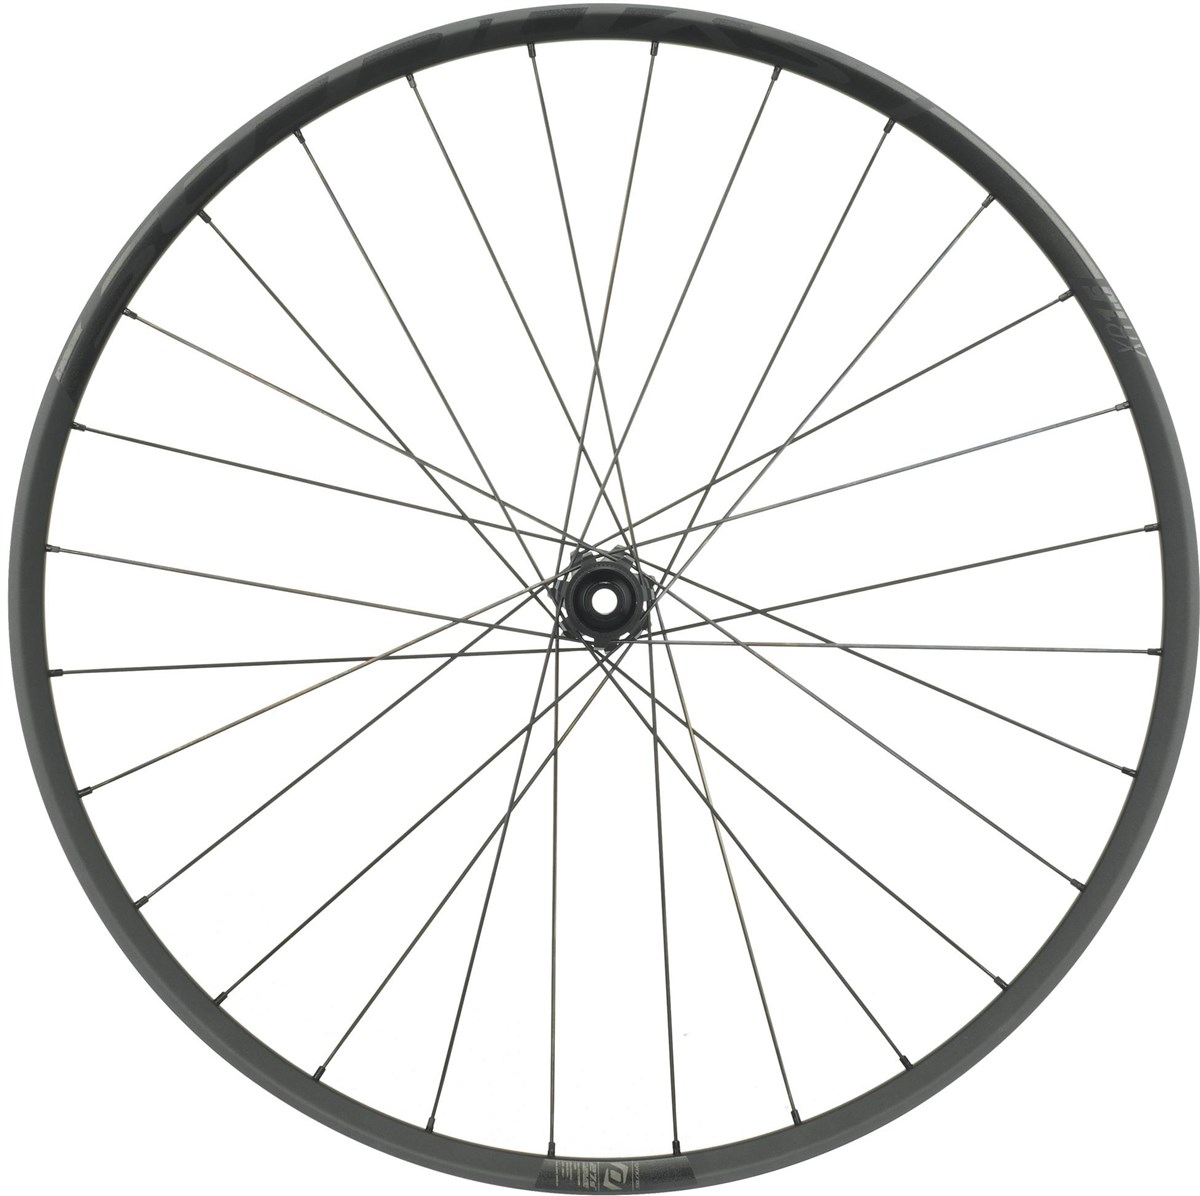 Syncros XR1.5 650b MTB Wheel